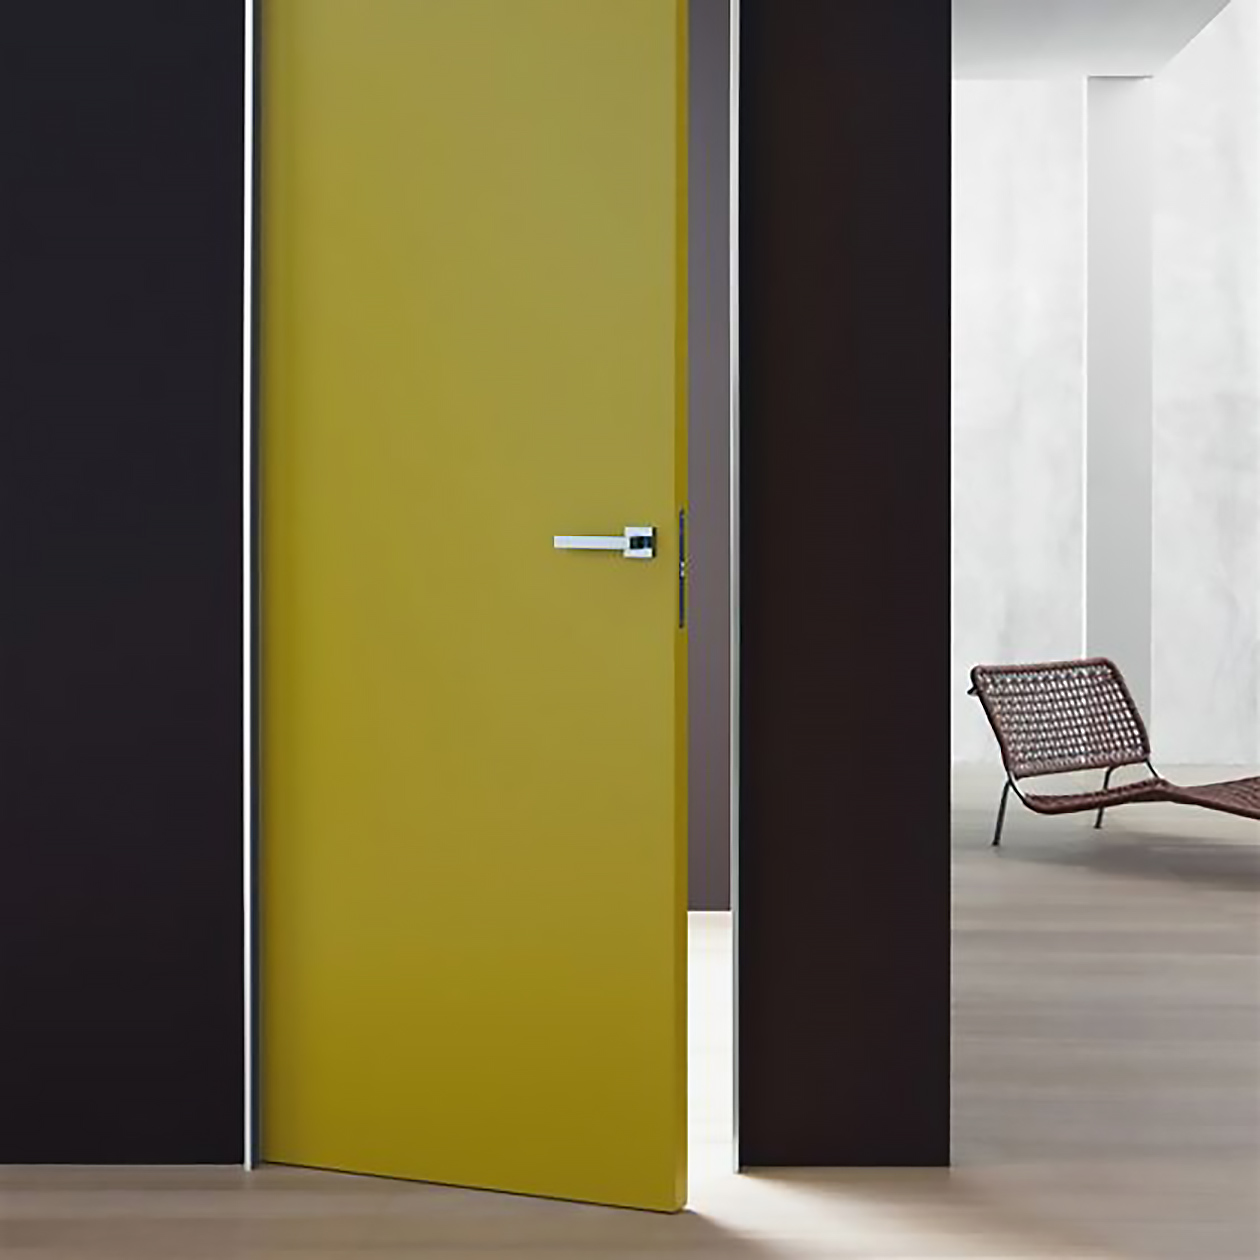 Если стены темно-синие, дверные полотна желтого цвета идеально встанут в интерьер. Фотография: lualdiporte.com